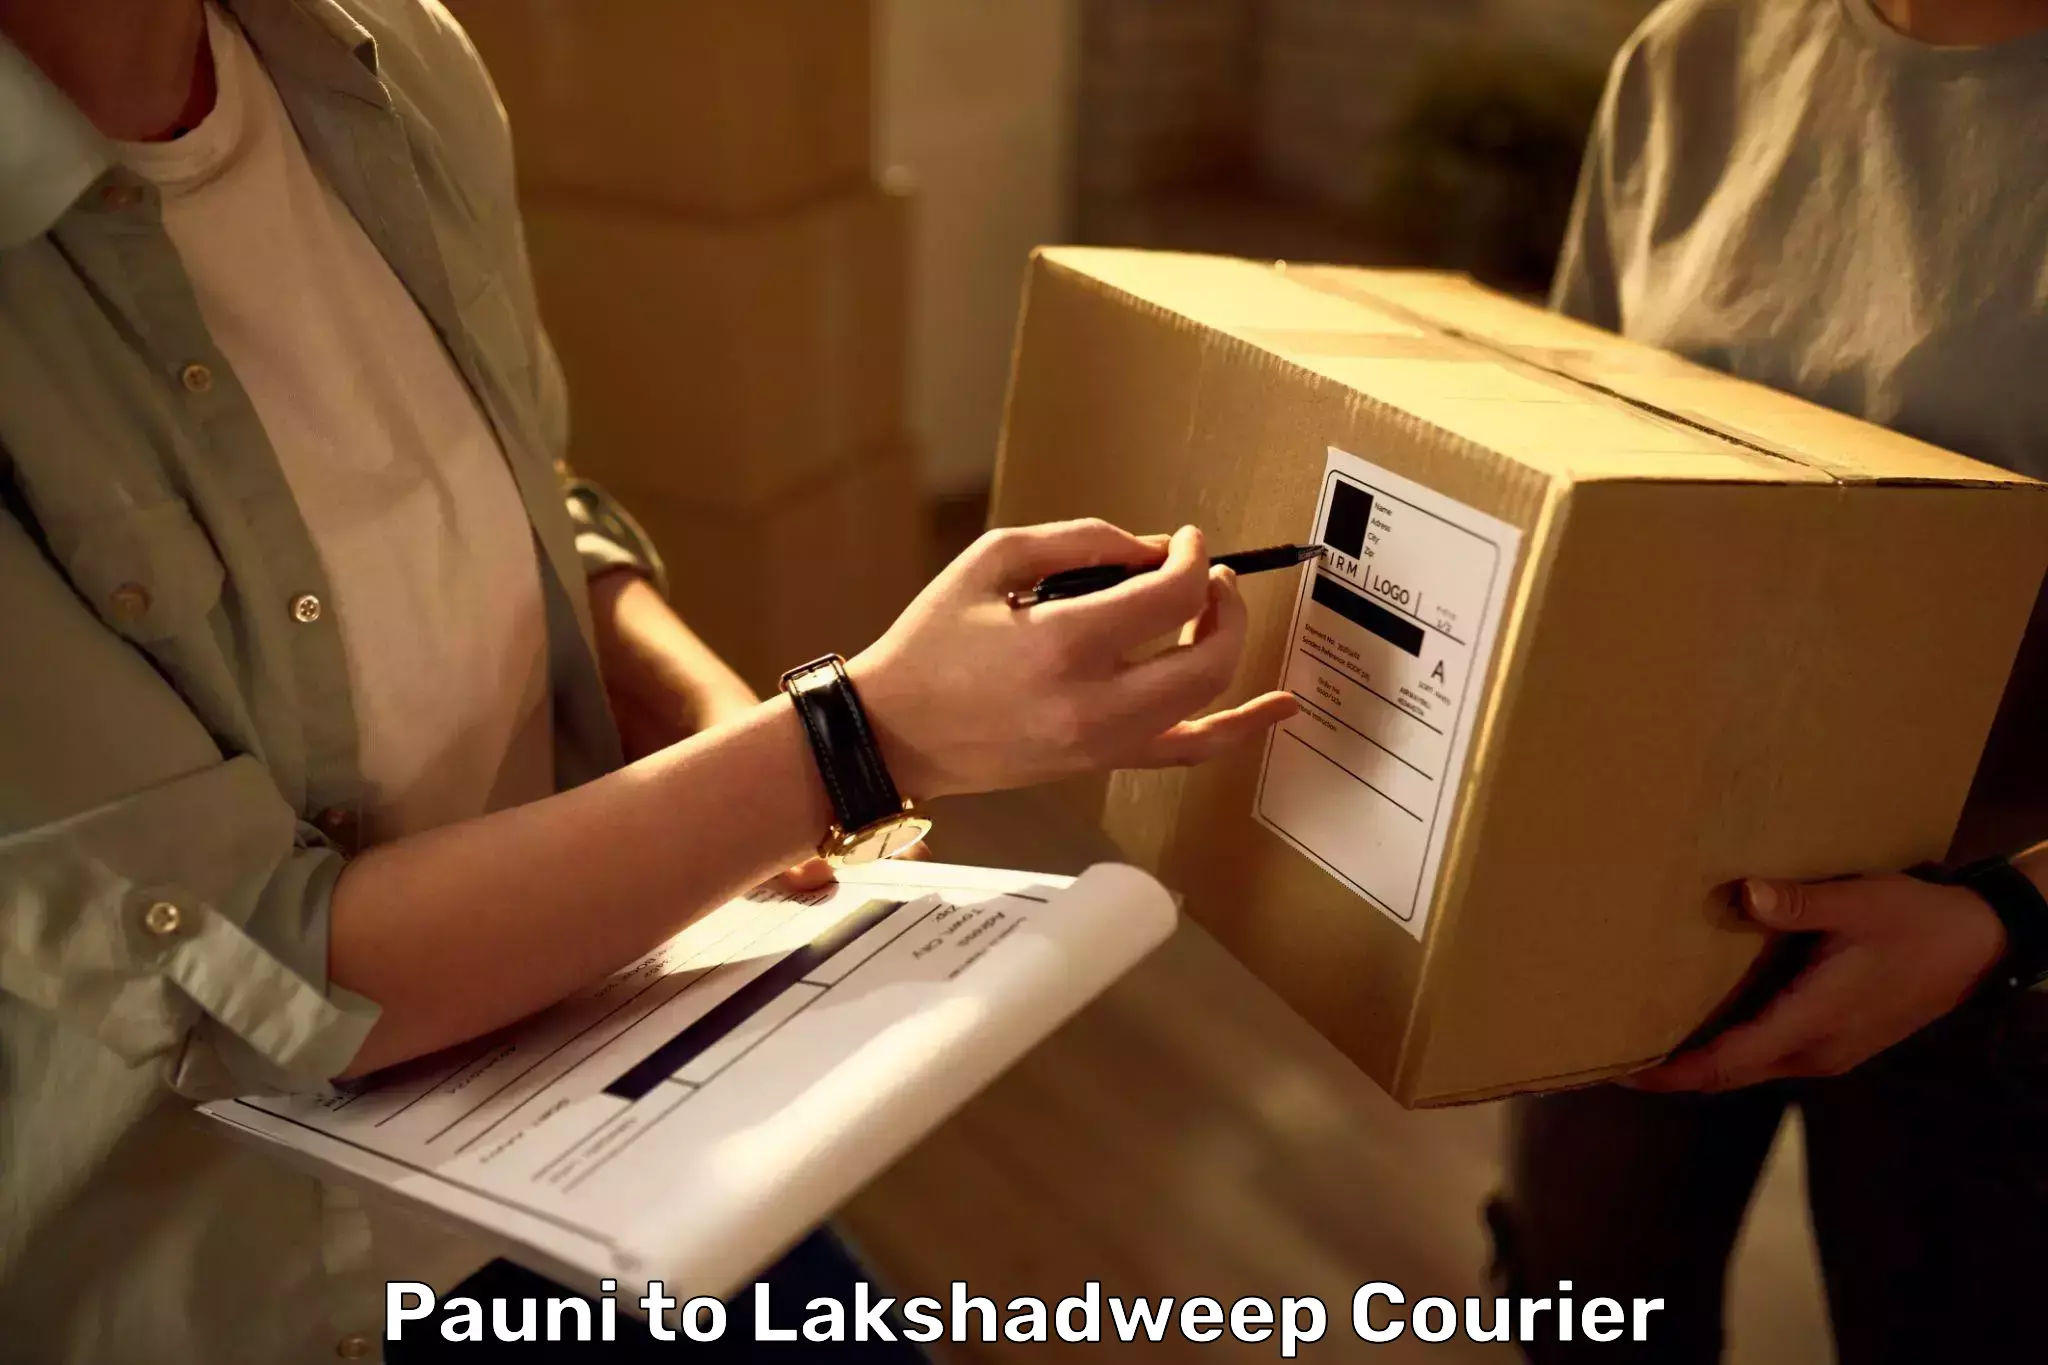 Door-to-door baggage service Pauni to Lakshadweep